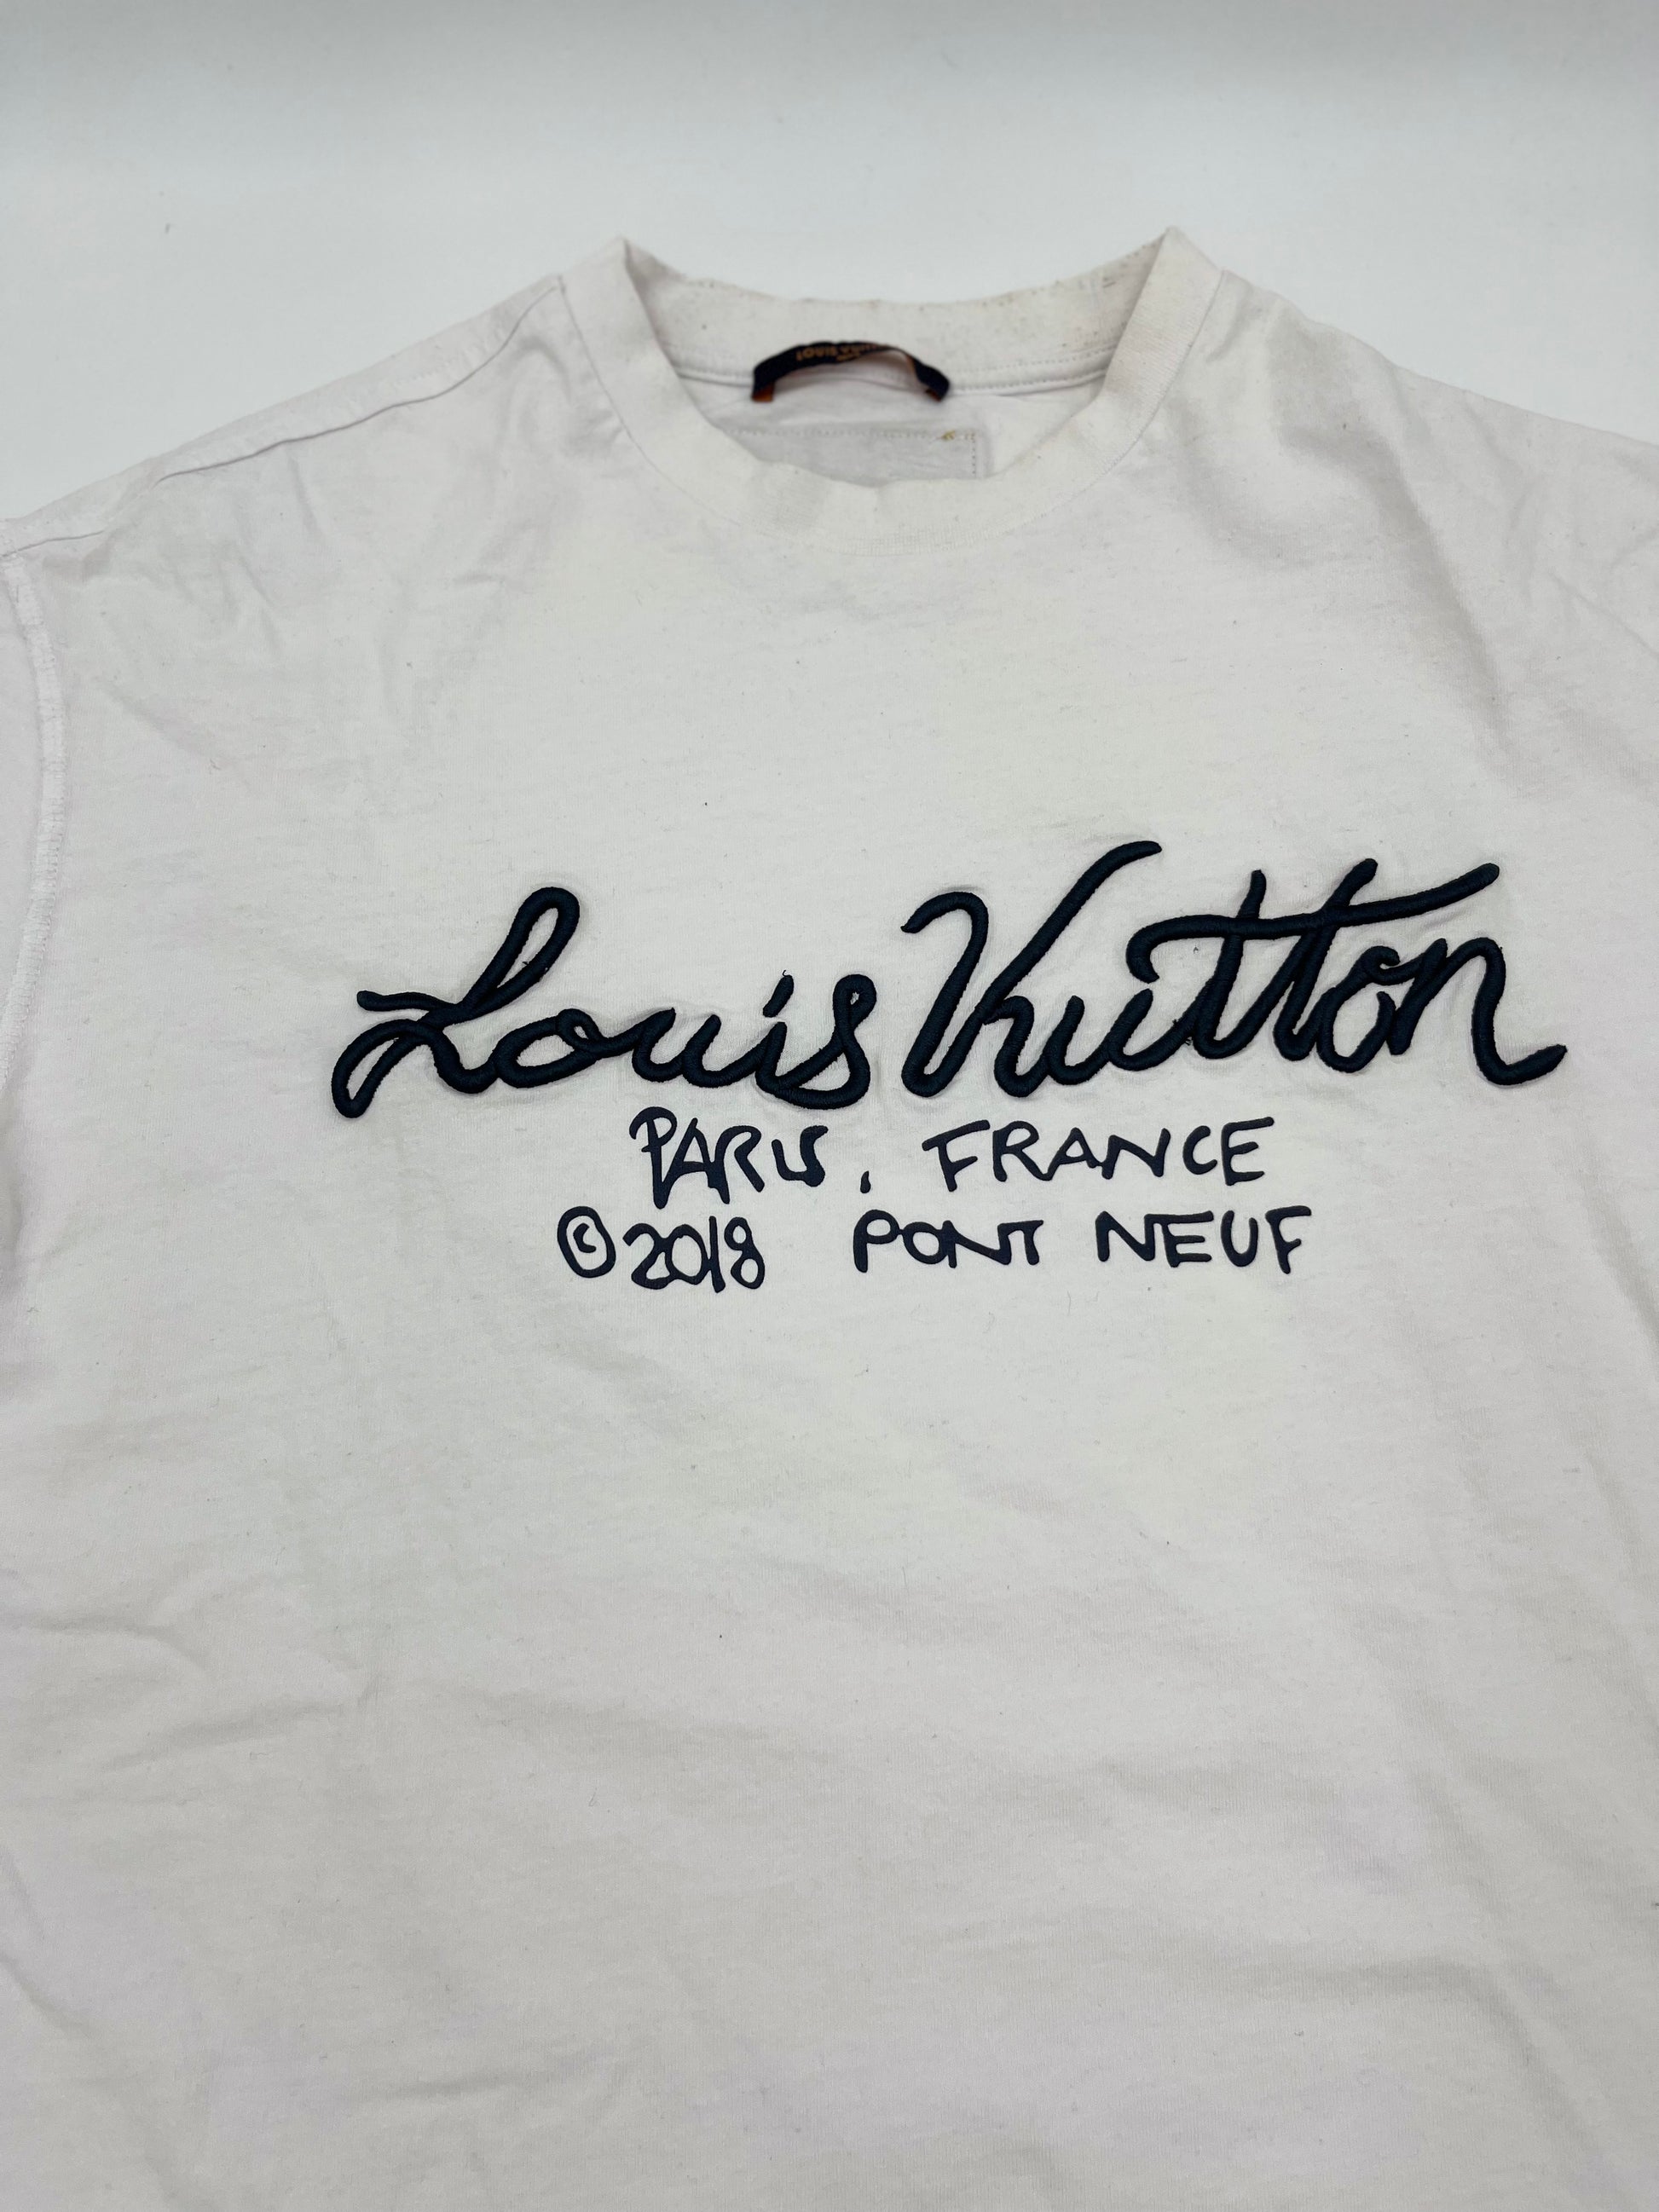 Louis Vuitton T-Shirt 2018 Paris Collection